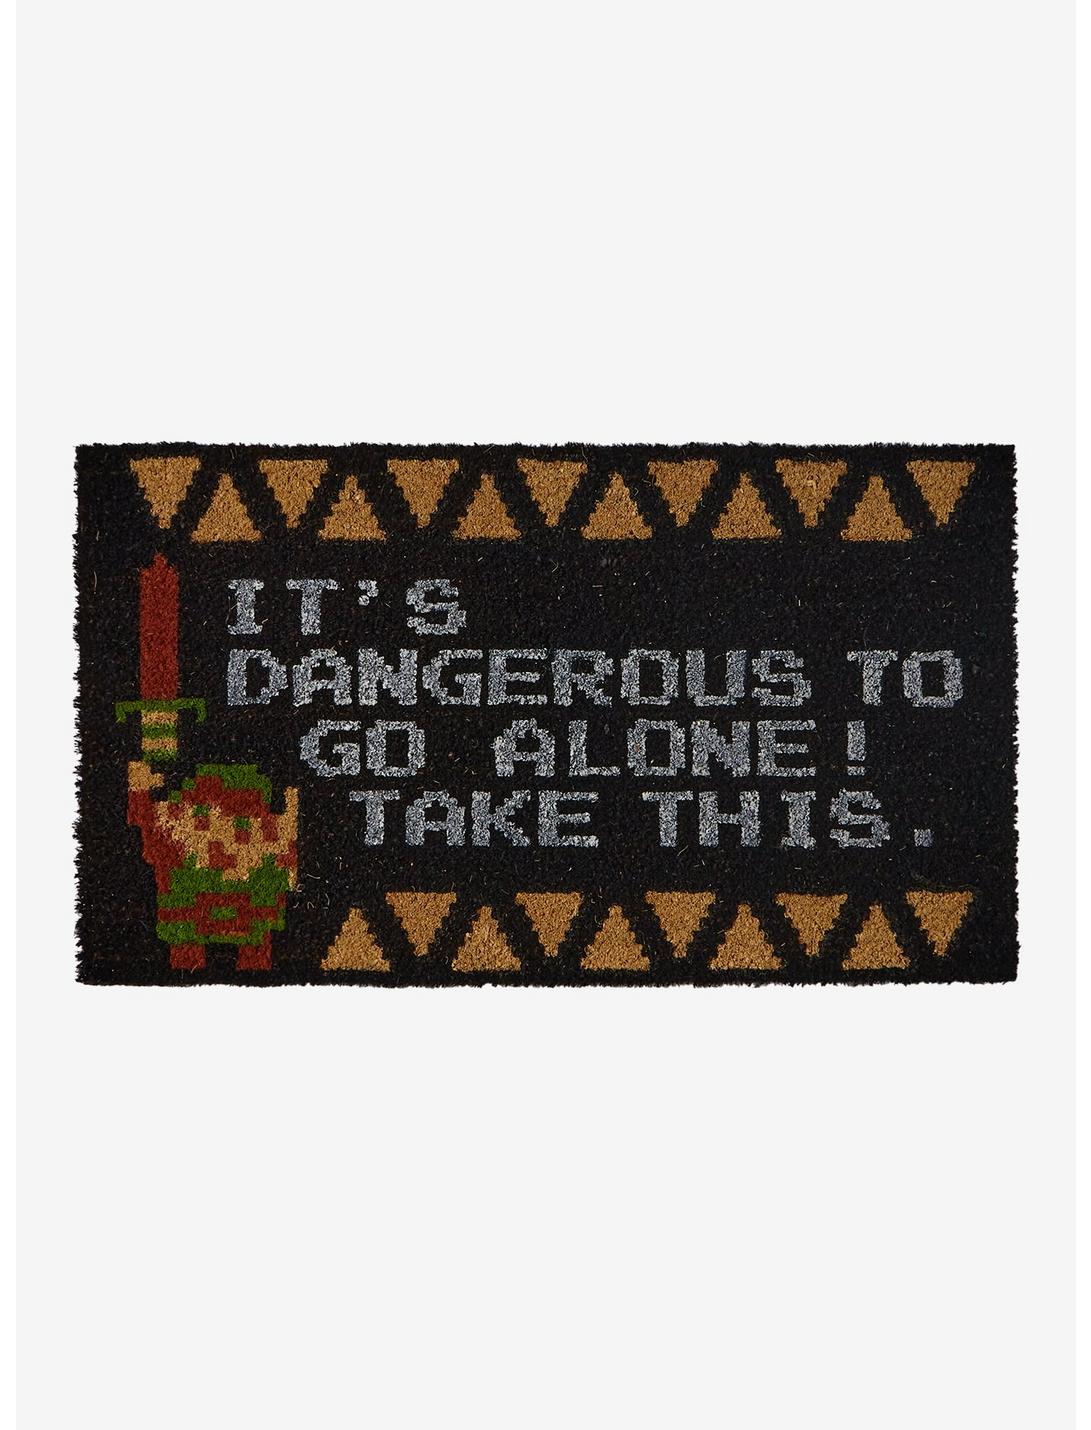 The Legend Of Zelda It's Dangerous Doormat, , hi-res